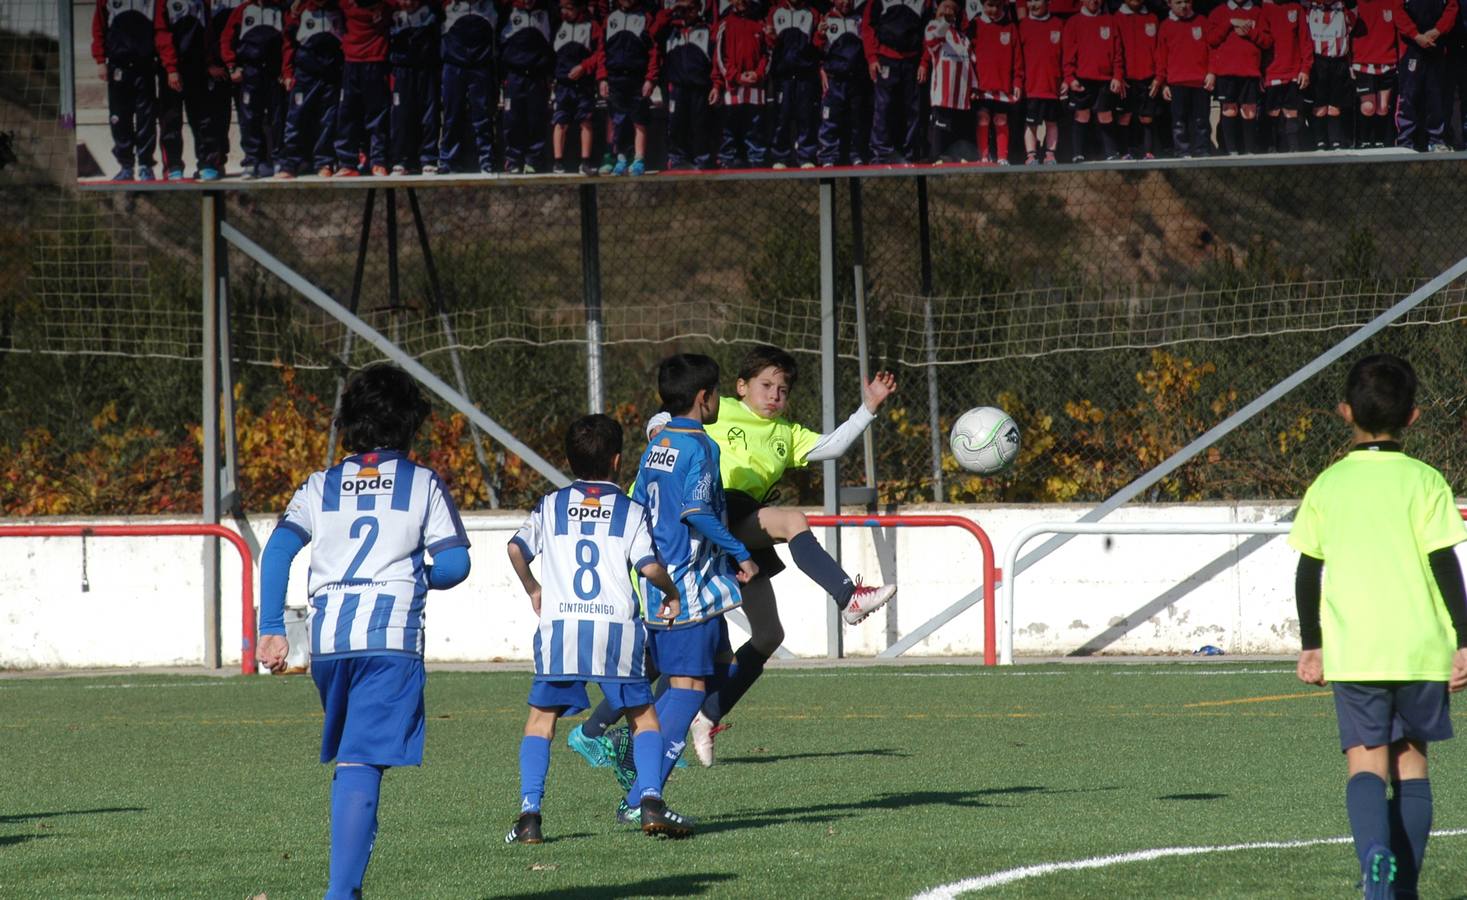 XXI torneo de fútbol base Villa de Autol que ha comenzado este jueves y durará hasta el domingo. Participan 99 equipos, 1.300 chavales de 30 clubes de La Rioja y Navarra.